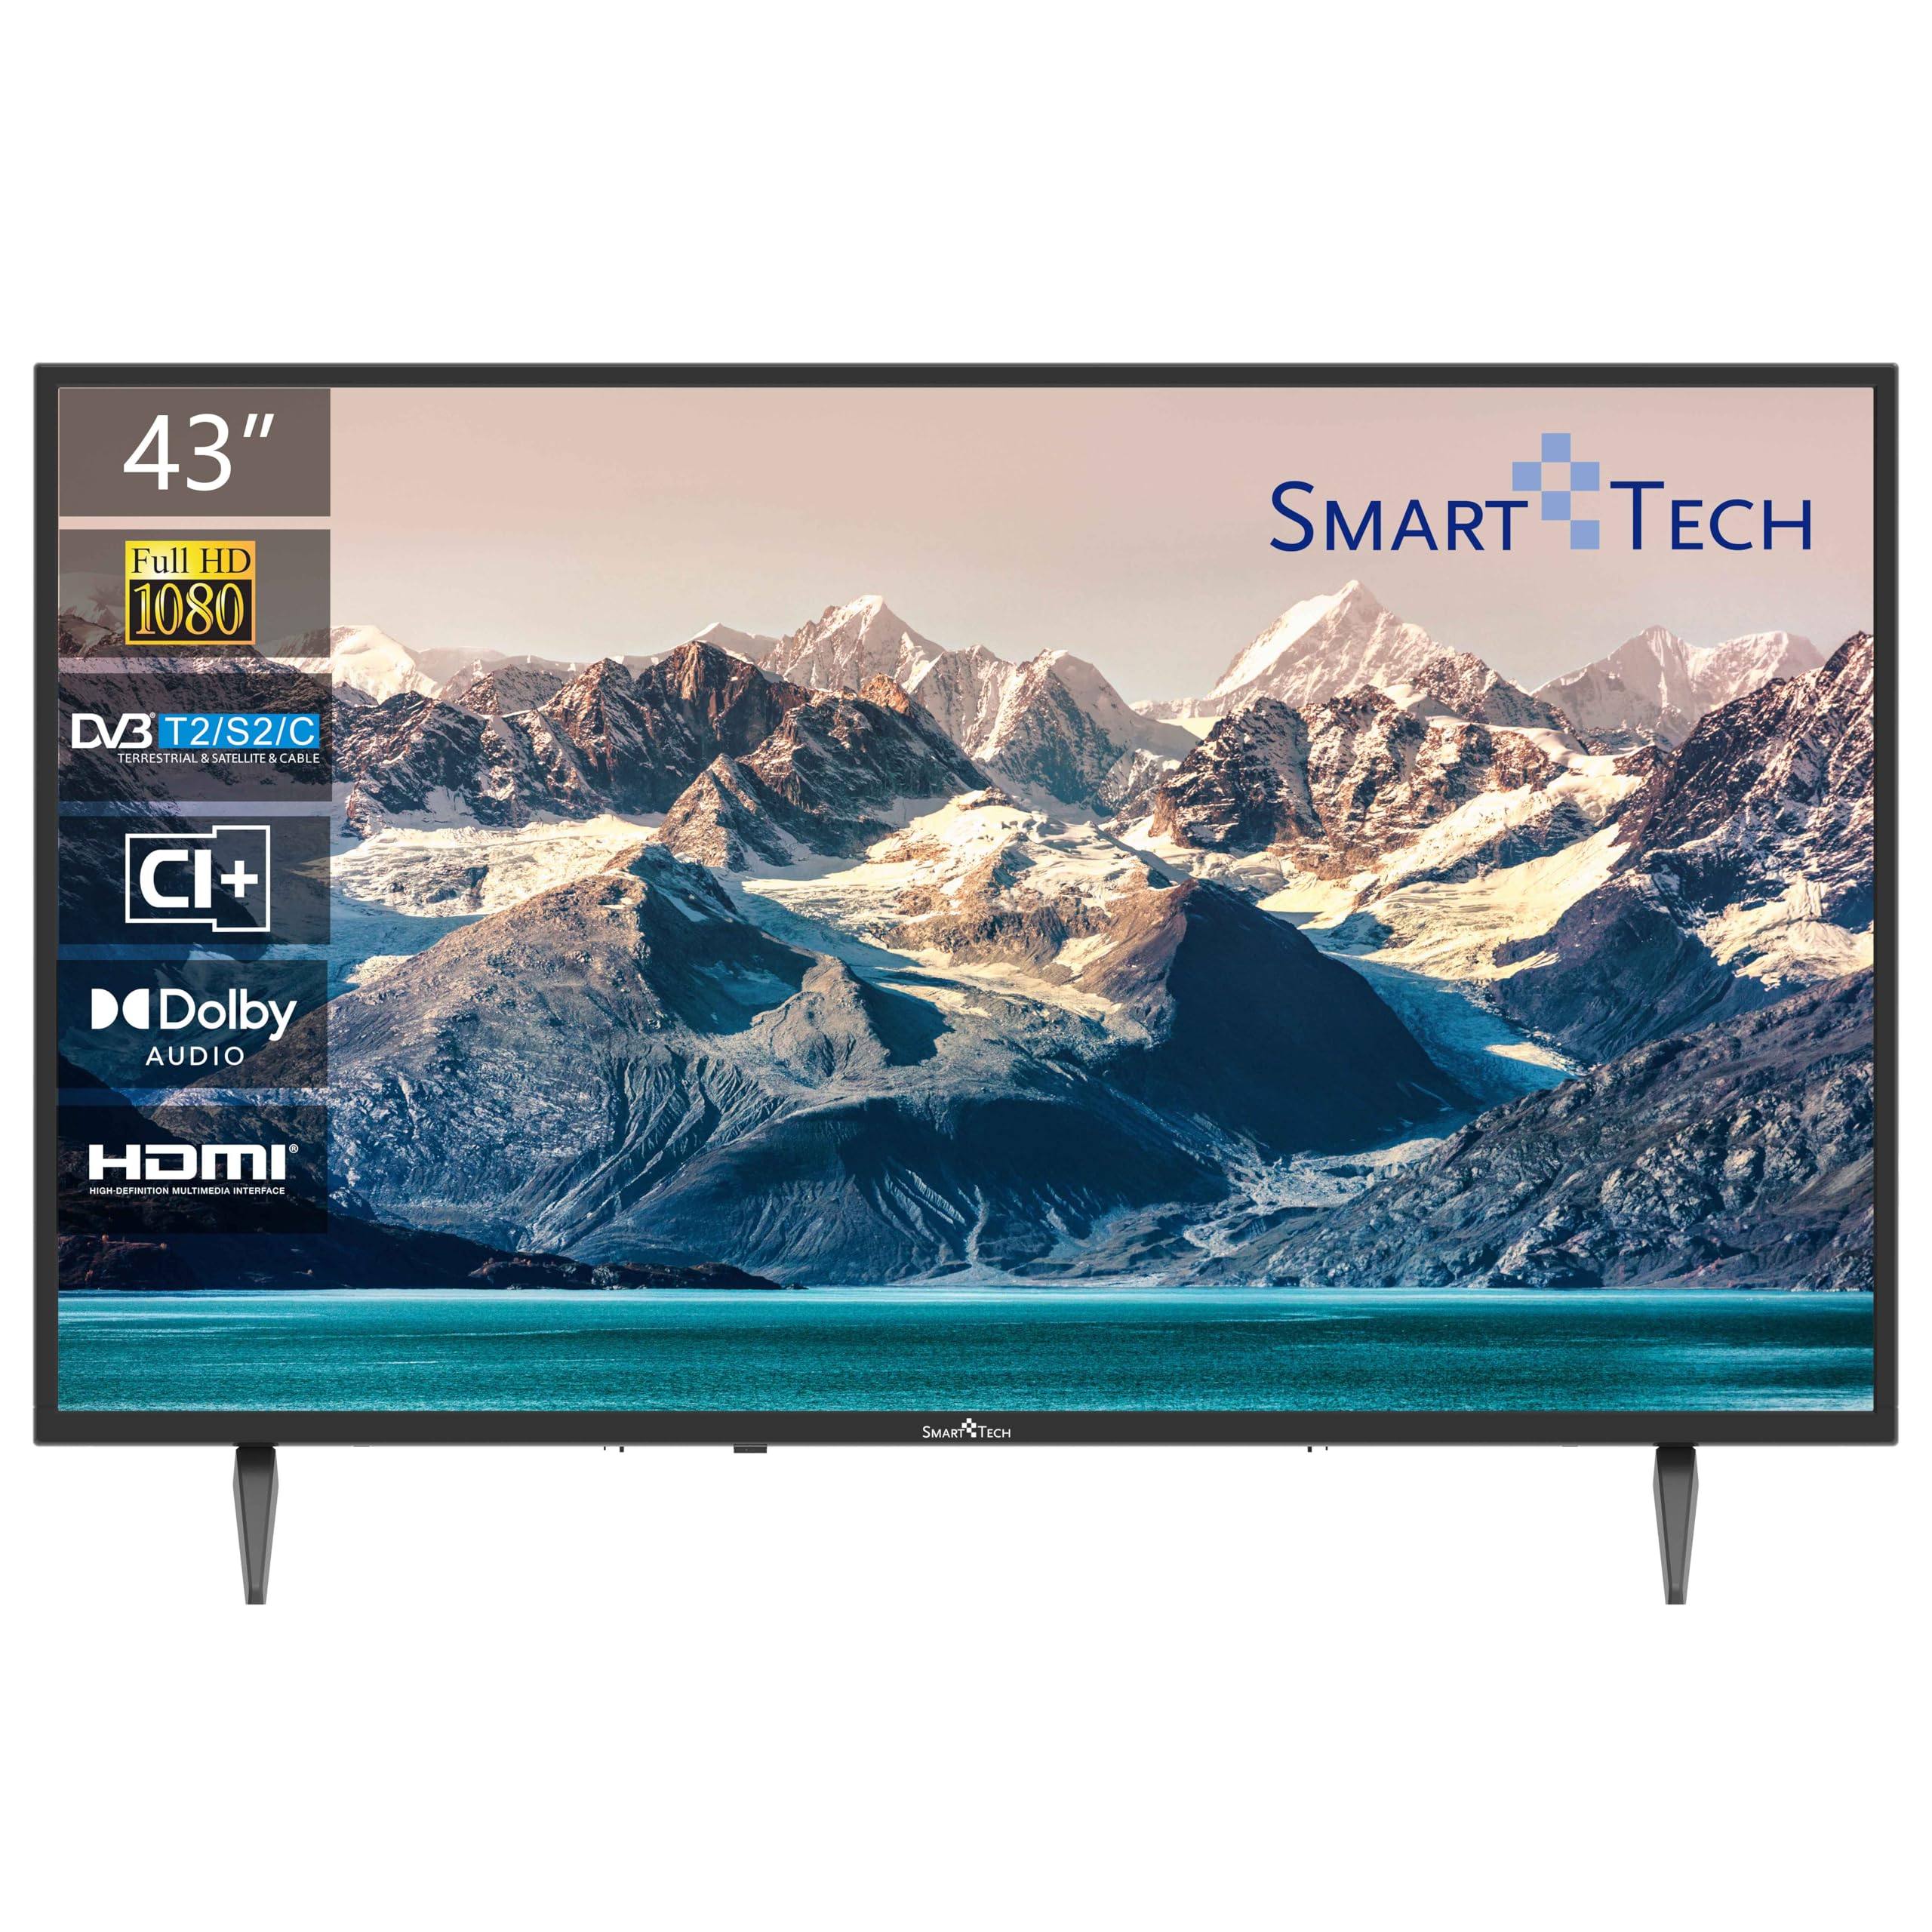 SMART TECH TV 43 Zoll Full HD Fernseher, DVB-T2/C/S2, Dolby Audio, Hotel Mode [43FN10T2]